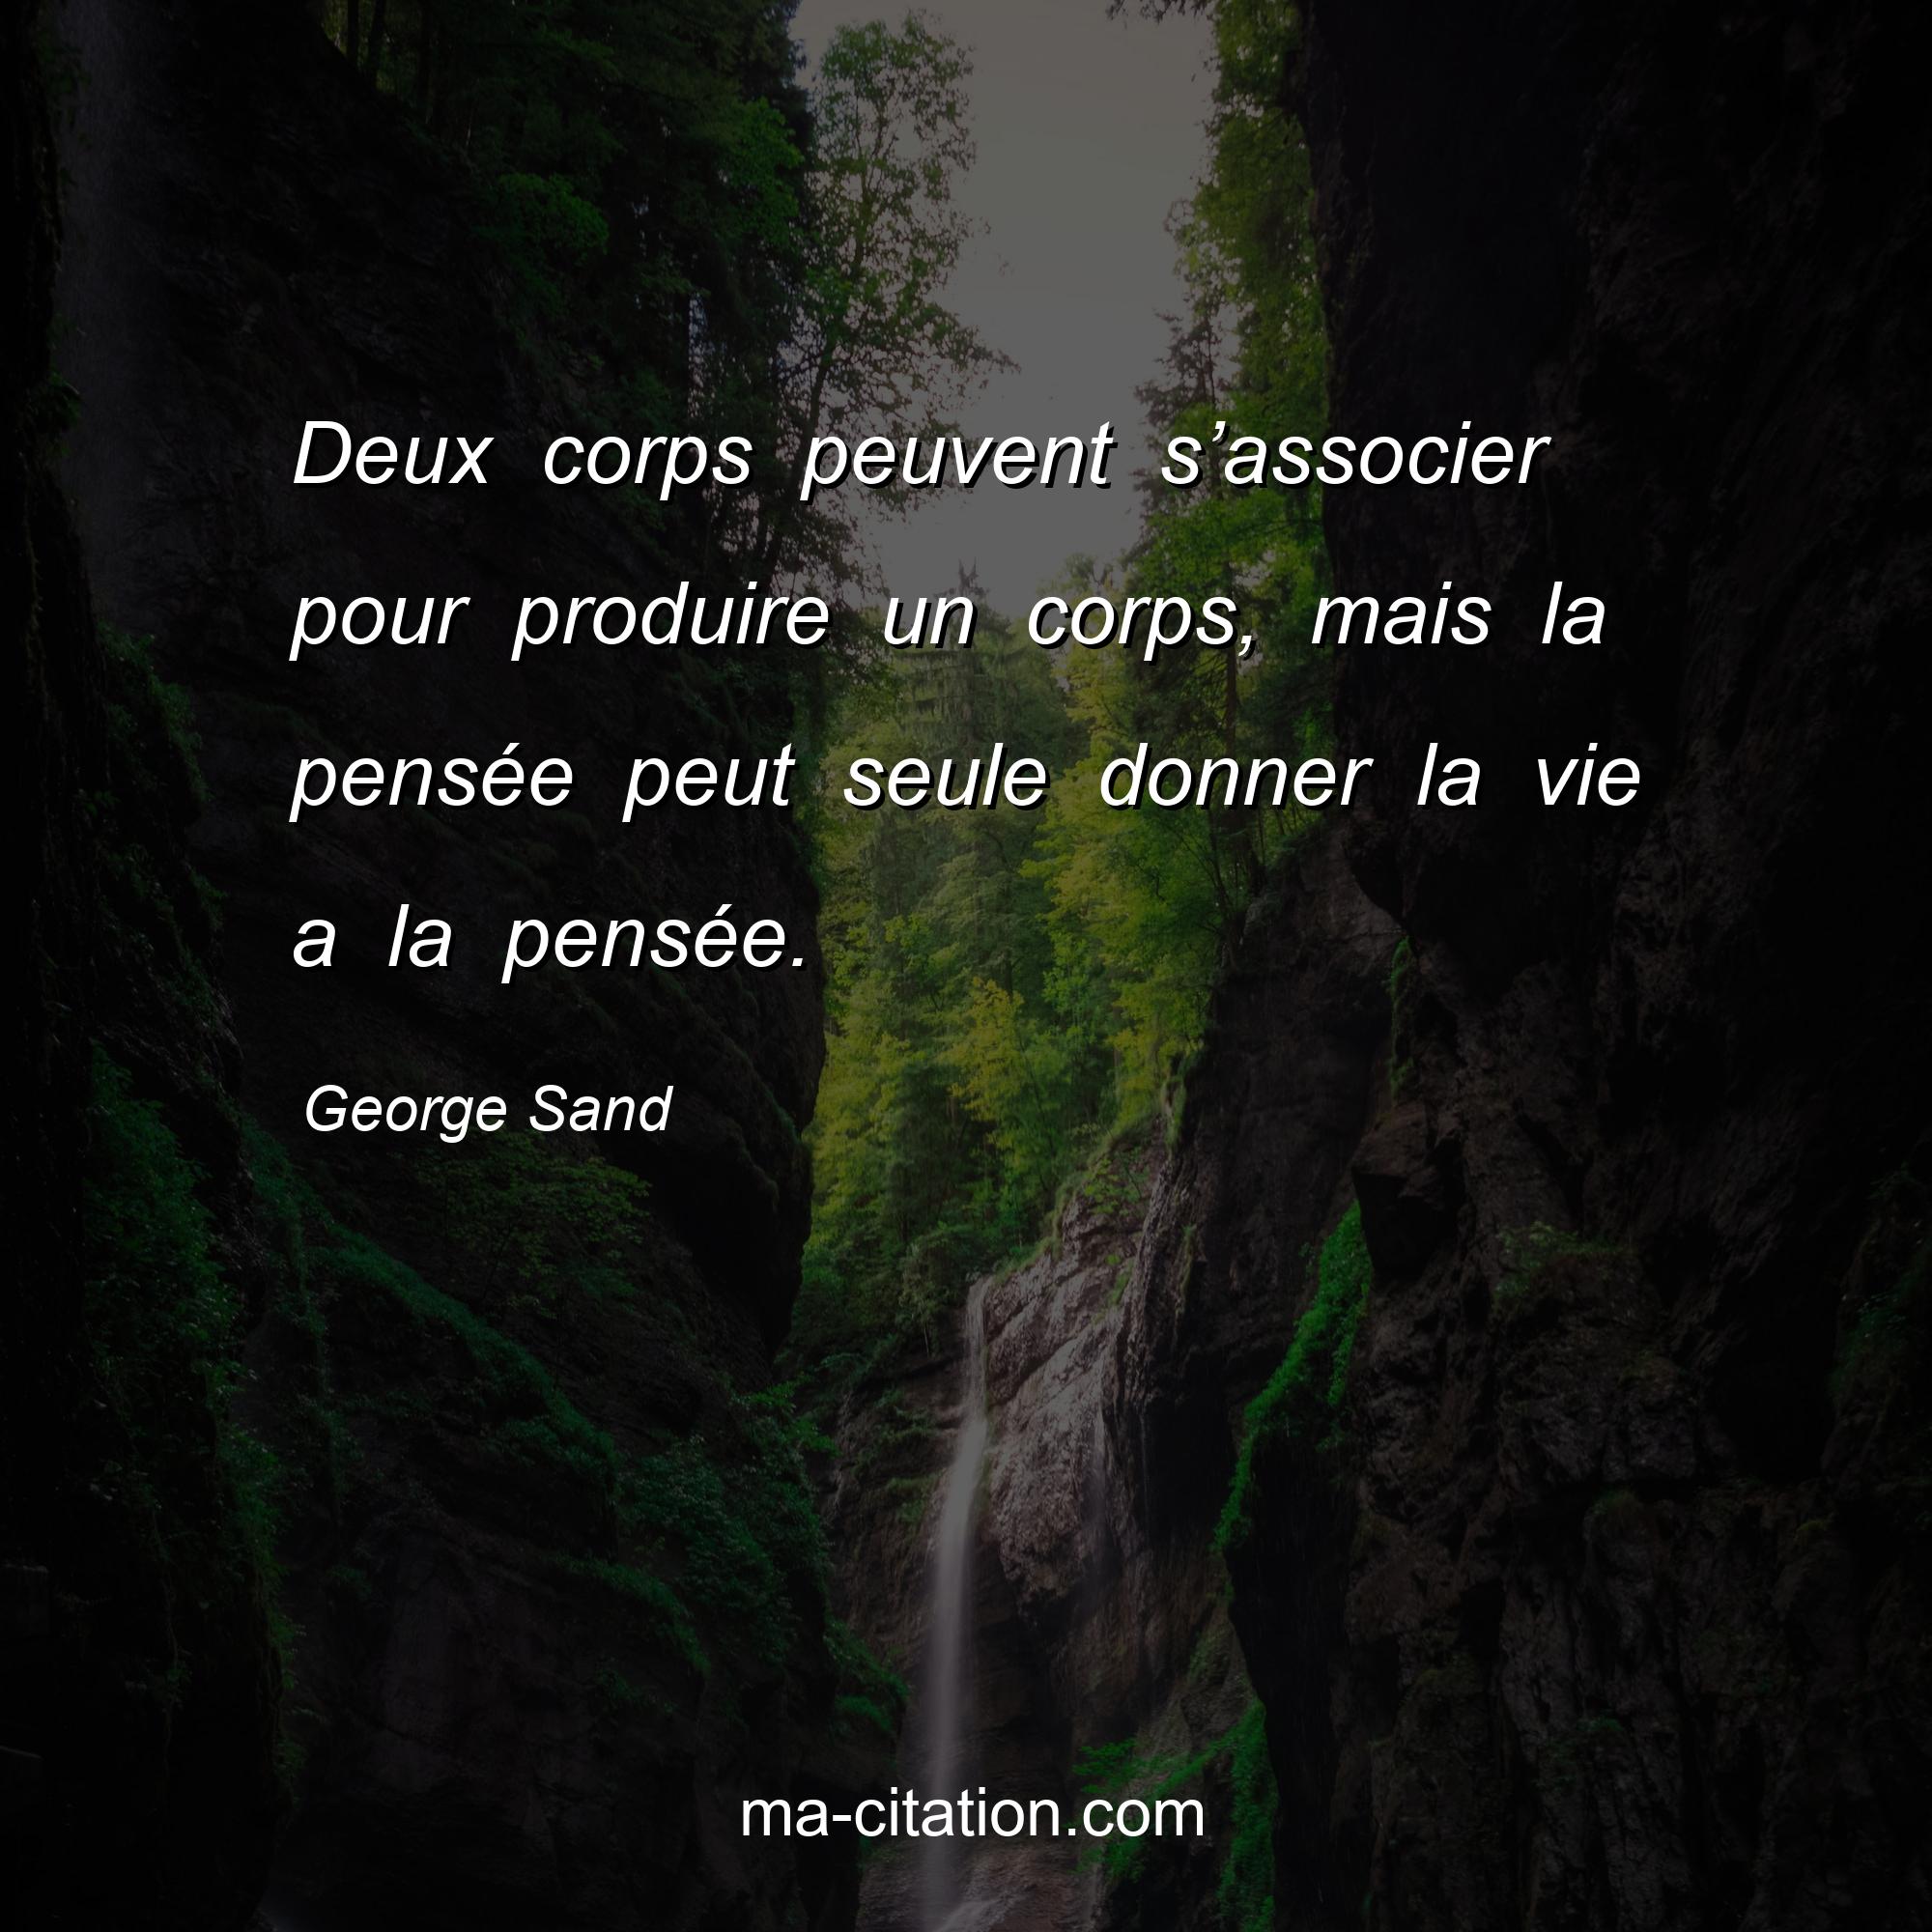 George Sand : Deux corps peuvent s’associer pour produire un corps, mais la pensée peut seule donner la vie a la pensée.